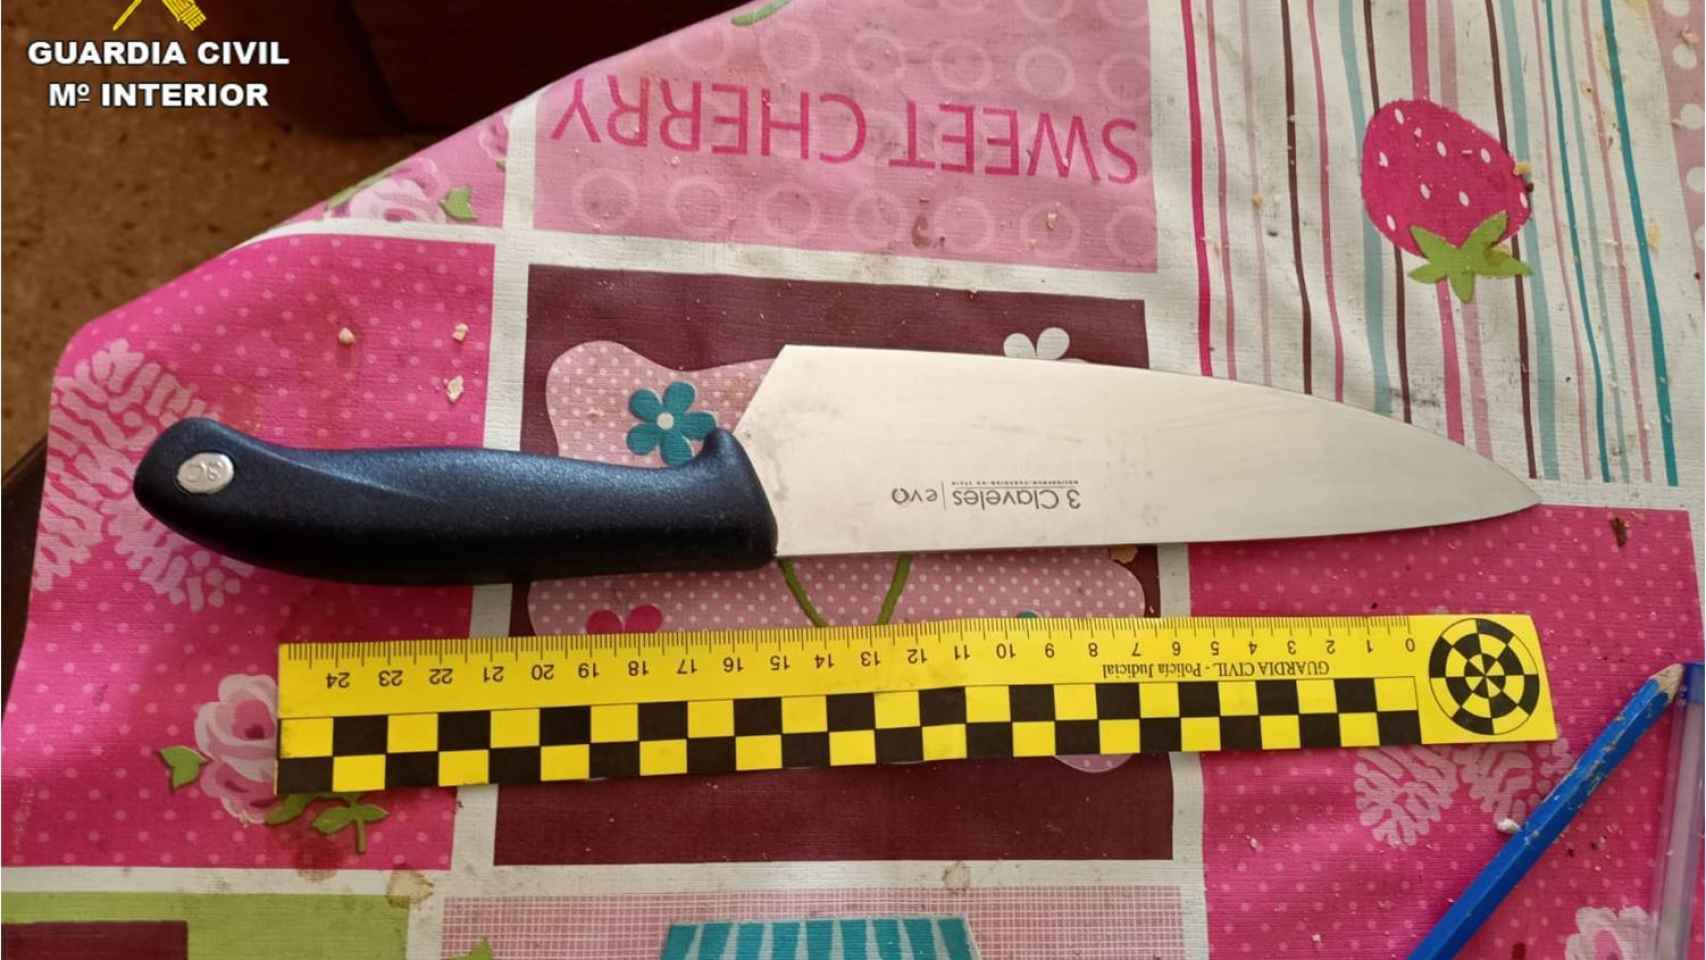 El cuchillo encontrado por la Guardia Civil.